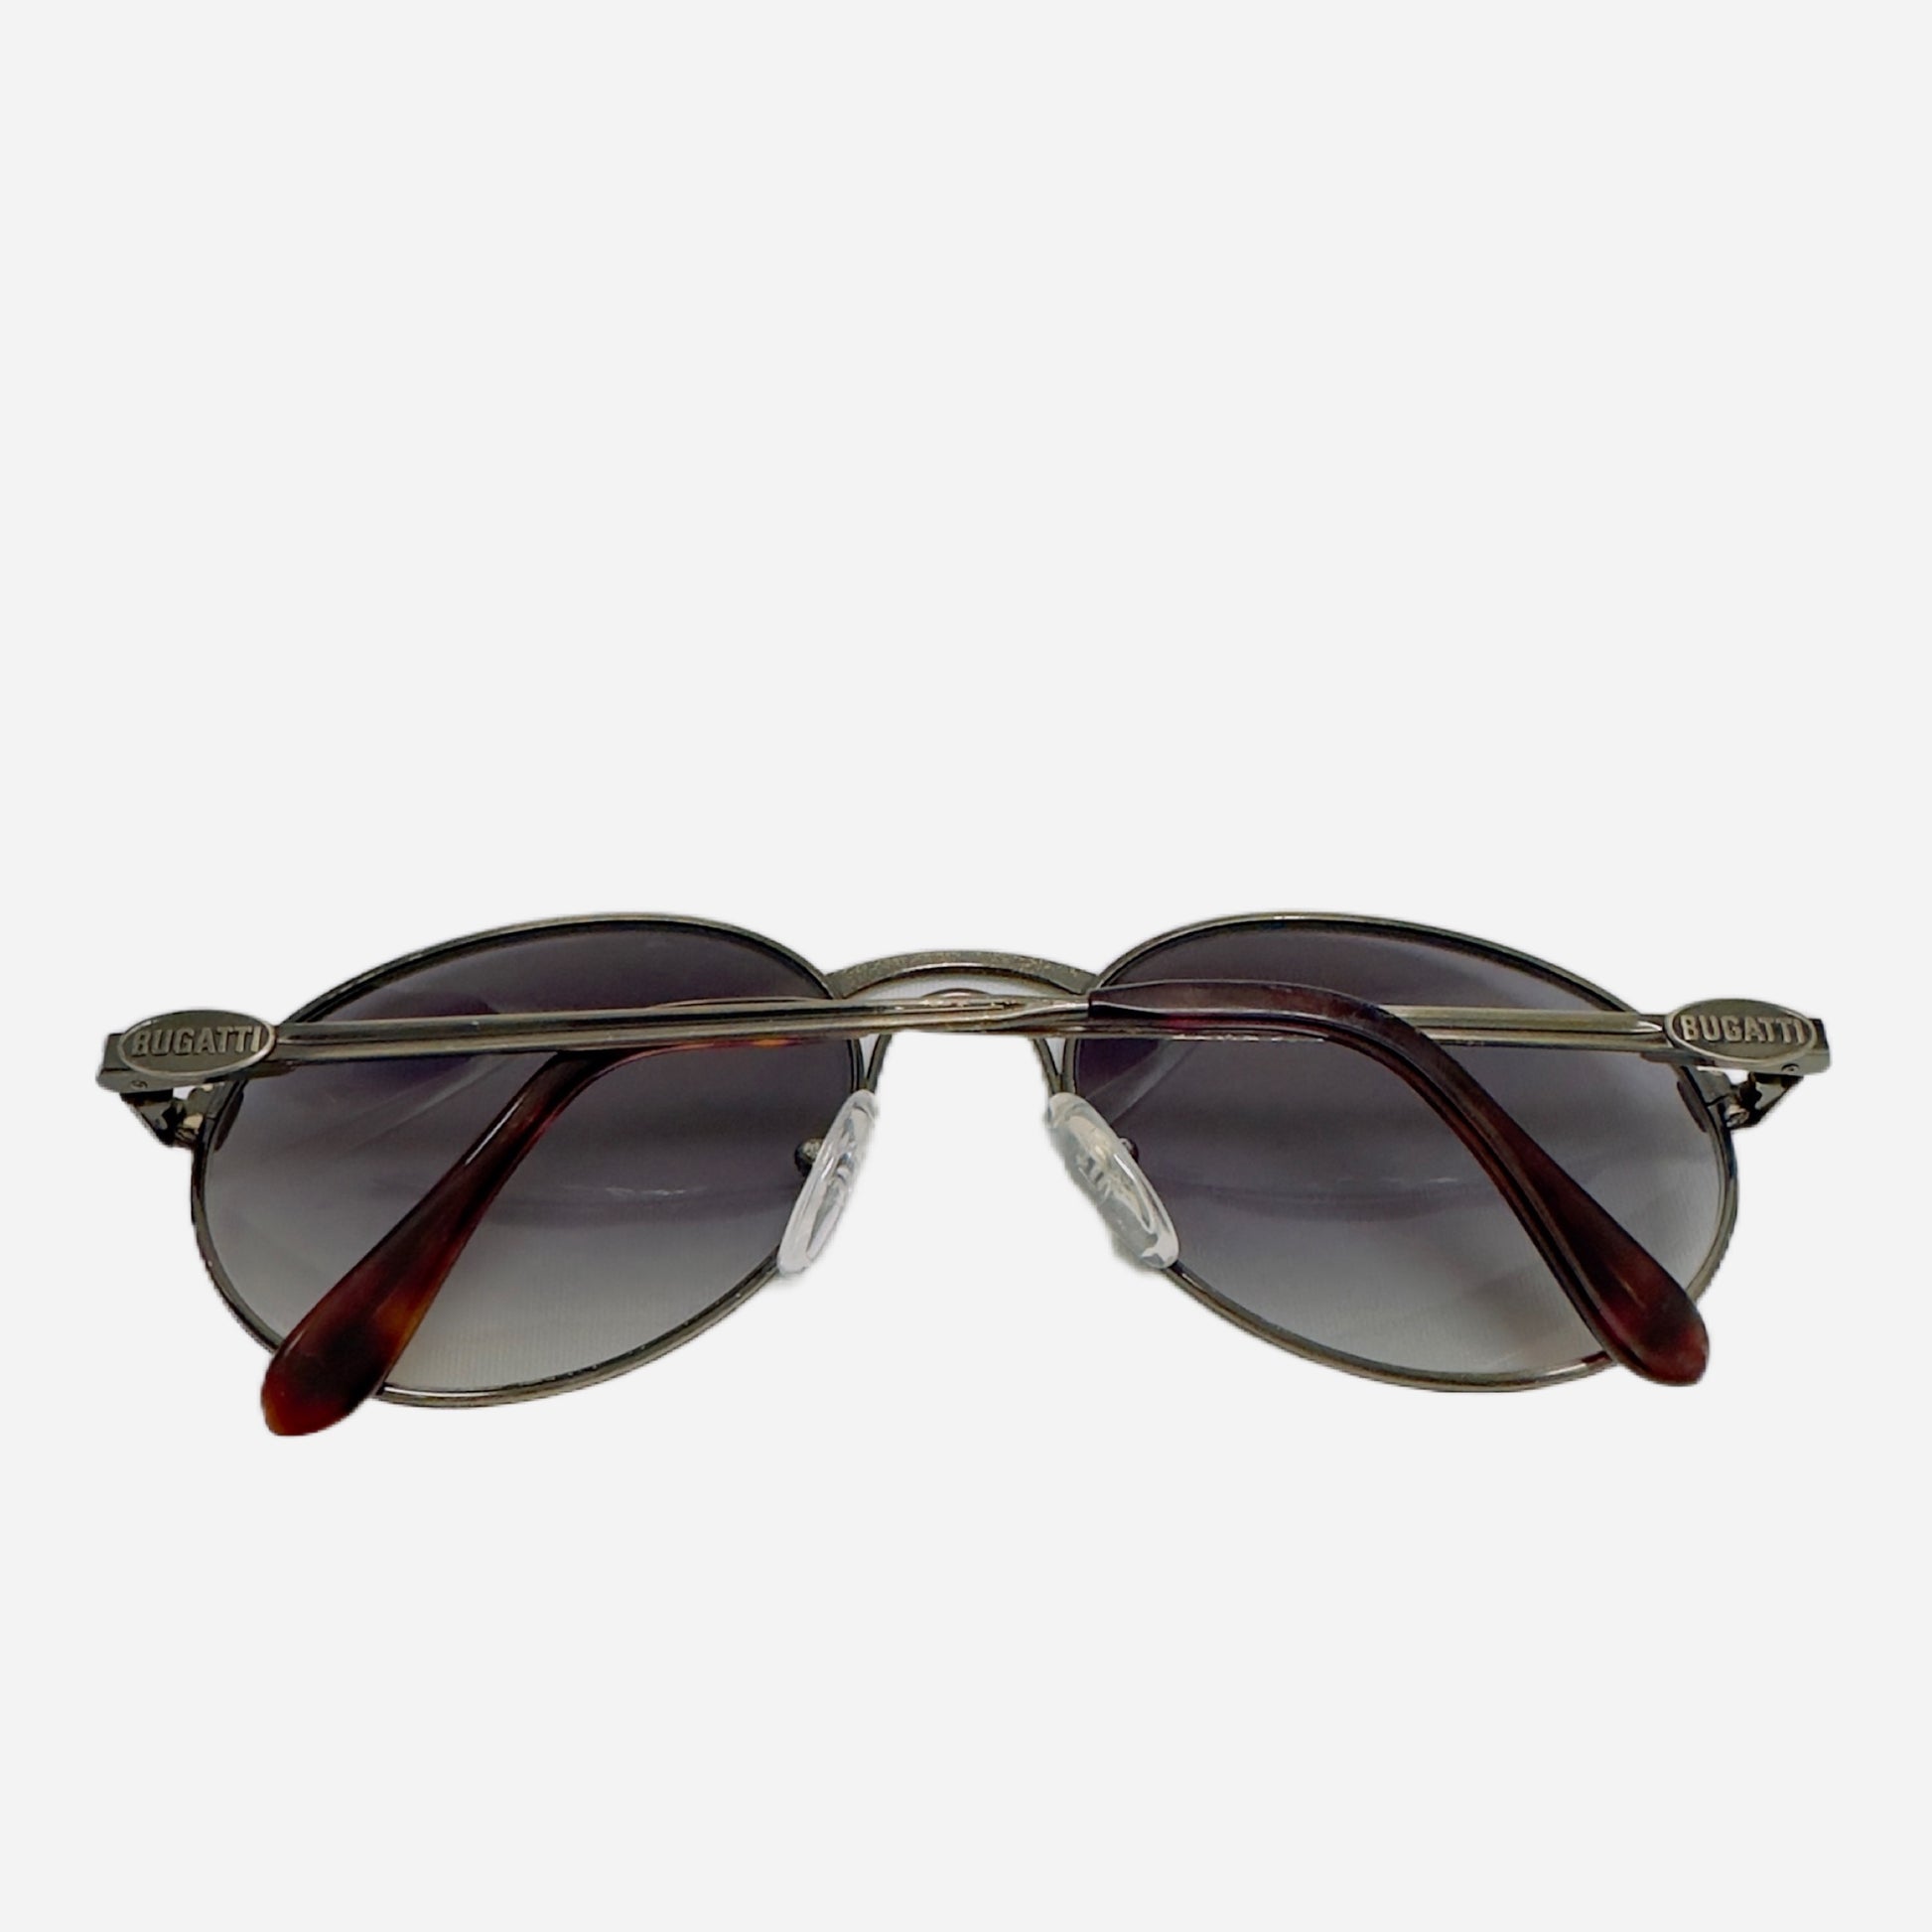 Ettore-Bugatti-Sonnenbrille-Sunglasses-03328-the-seekers-back